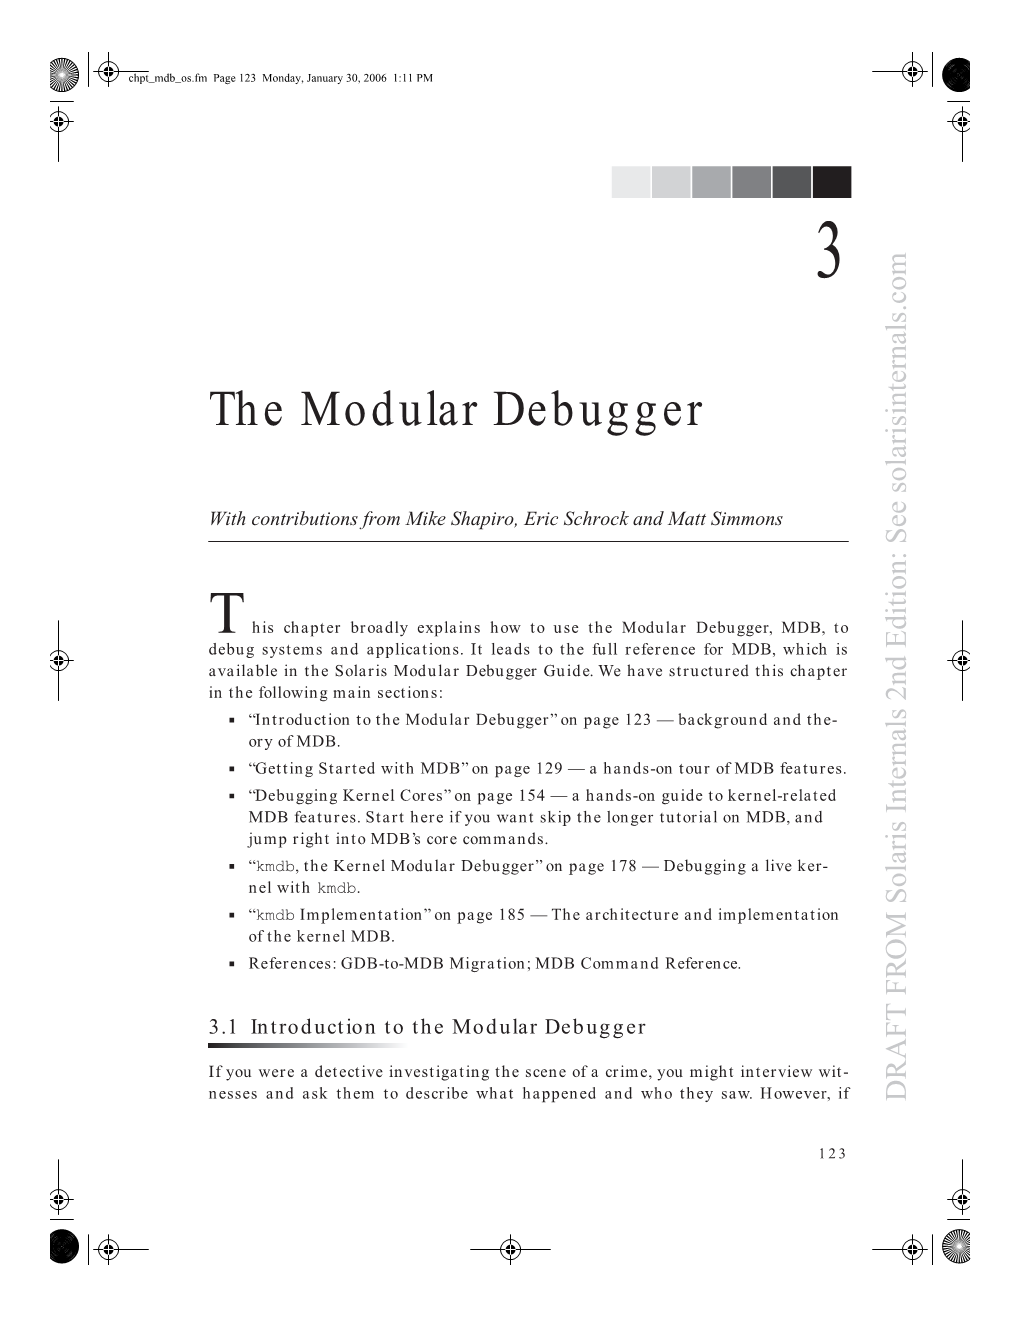 The Modular Debugger